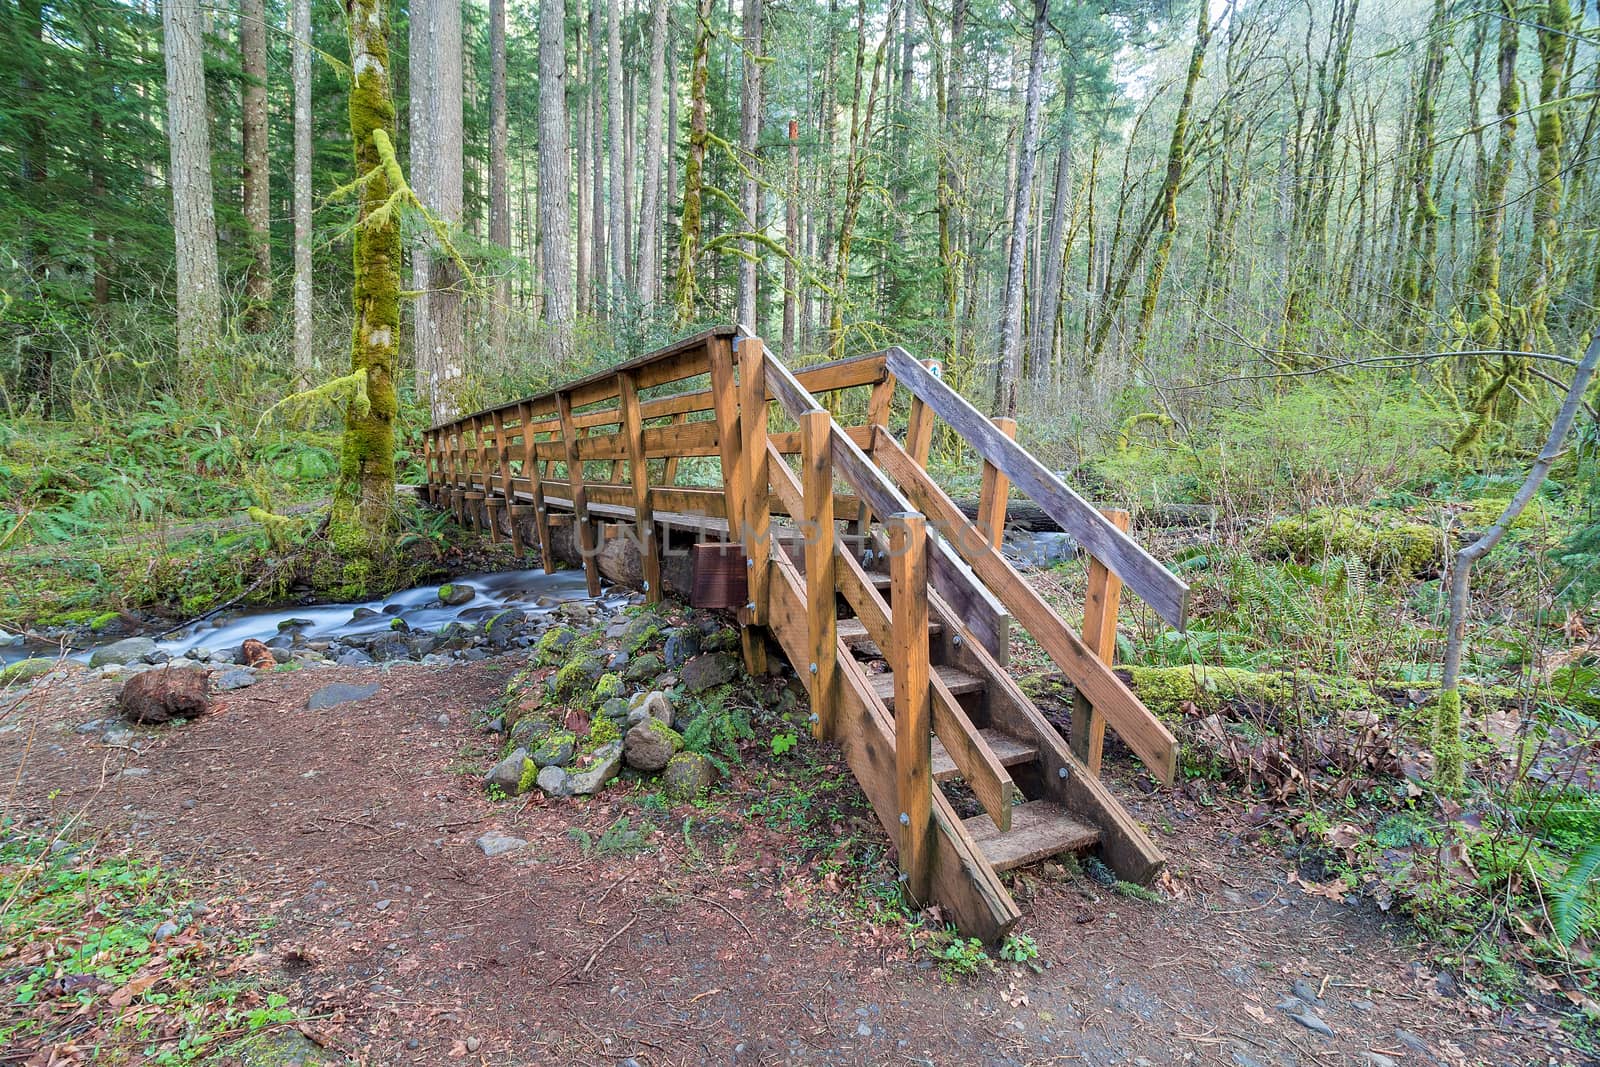 Wood Bridge over Dry Creek in Oregon by Davidgn